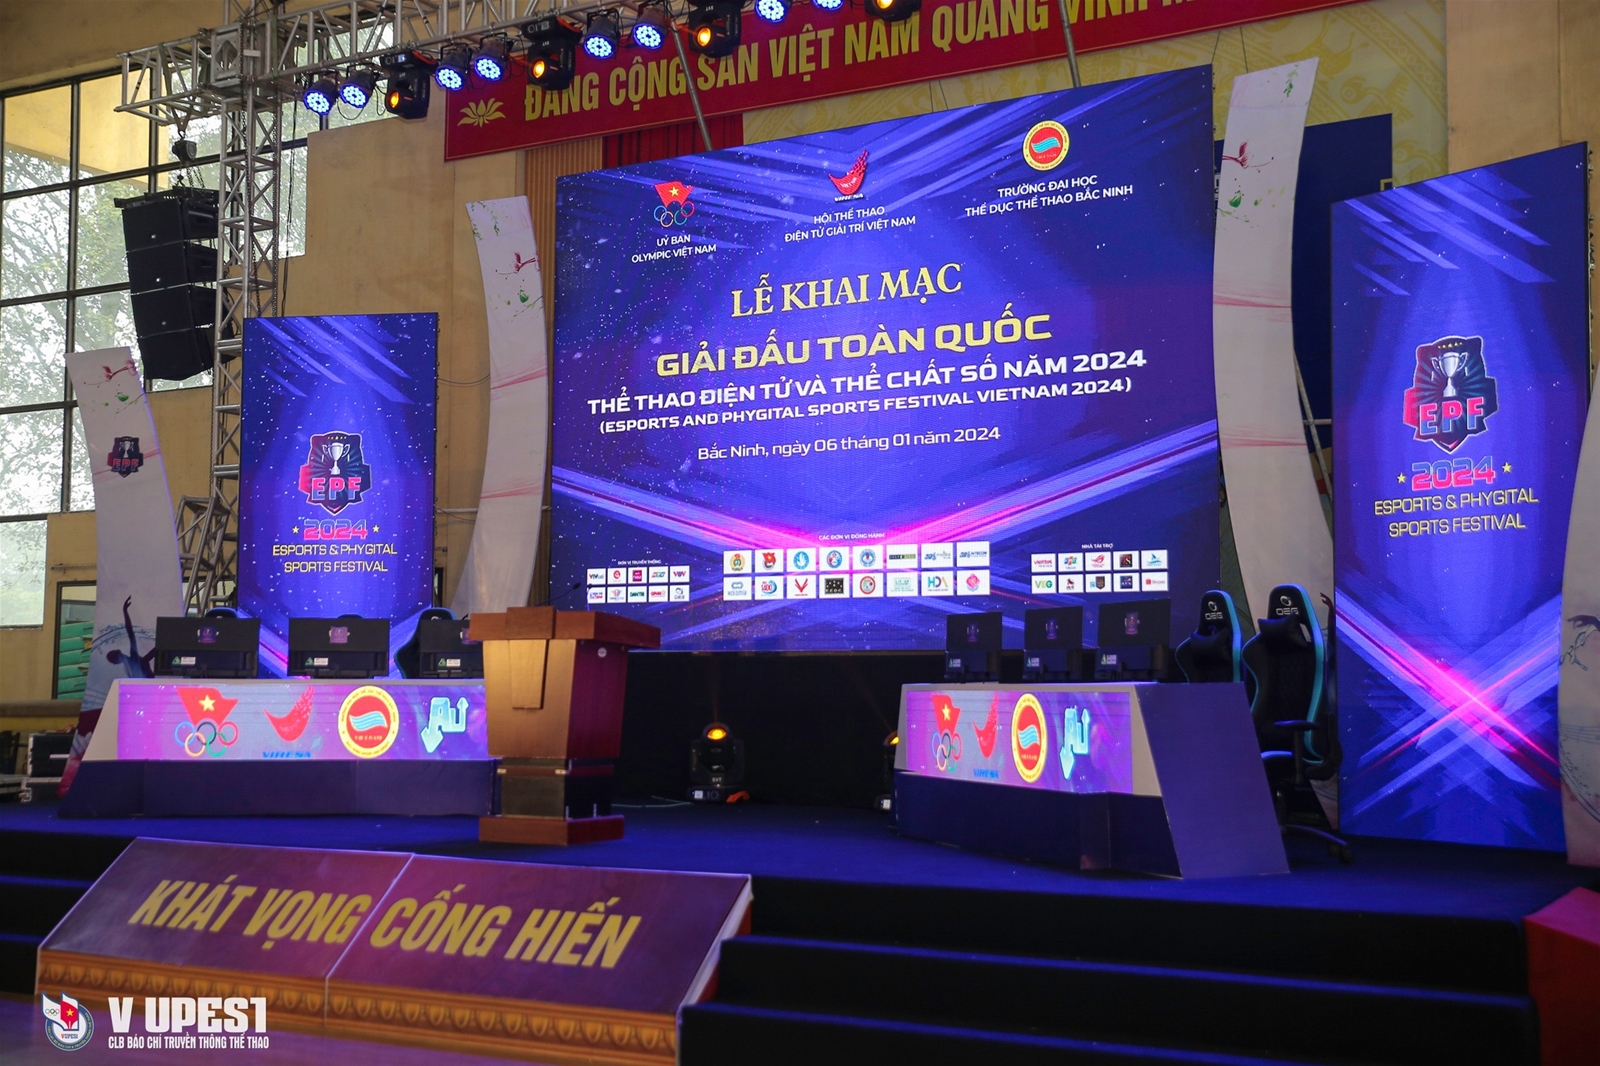 Hoàn tất công tác chuẩn bị cho giải đấu Giải Thể thao Điện tử và Thể chất Số lần đầu tiên được tổ chức tại Trường Đại học TDTT Bắc Ninh